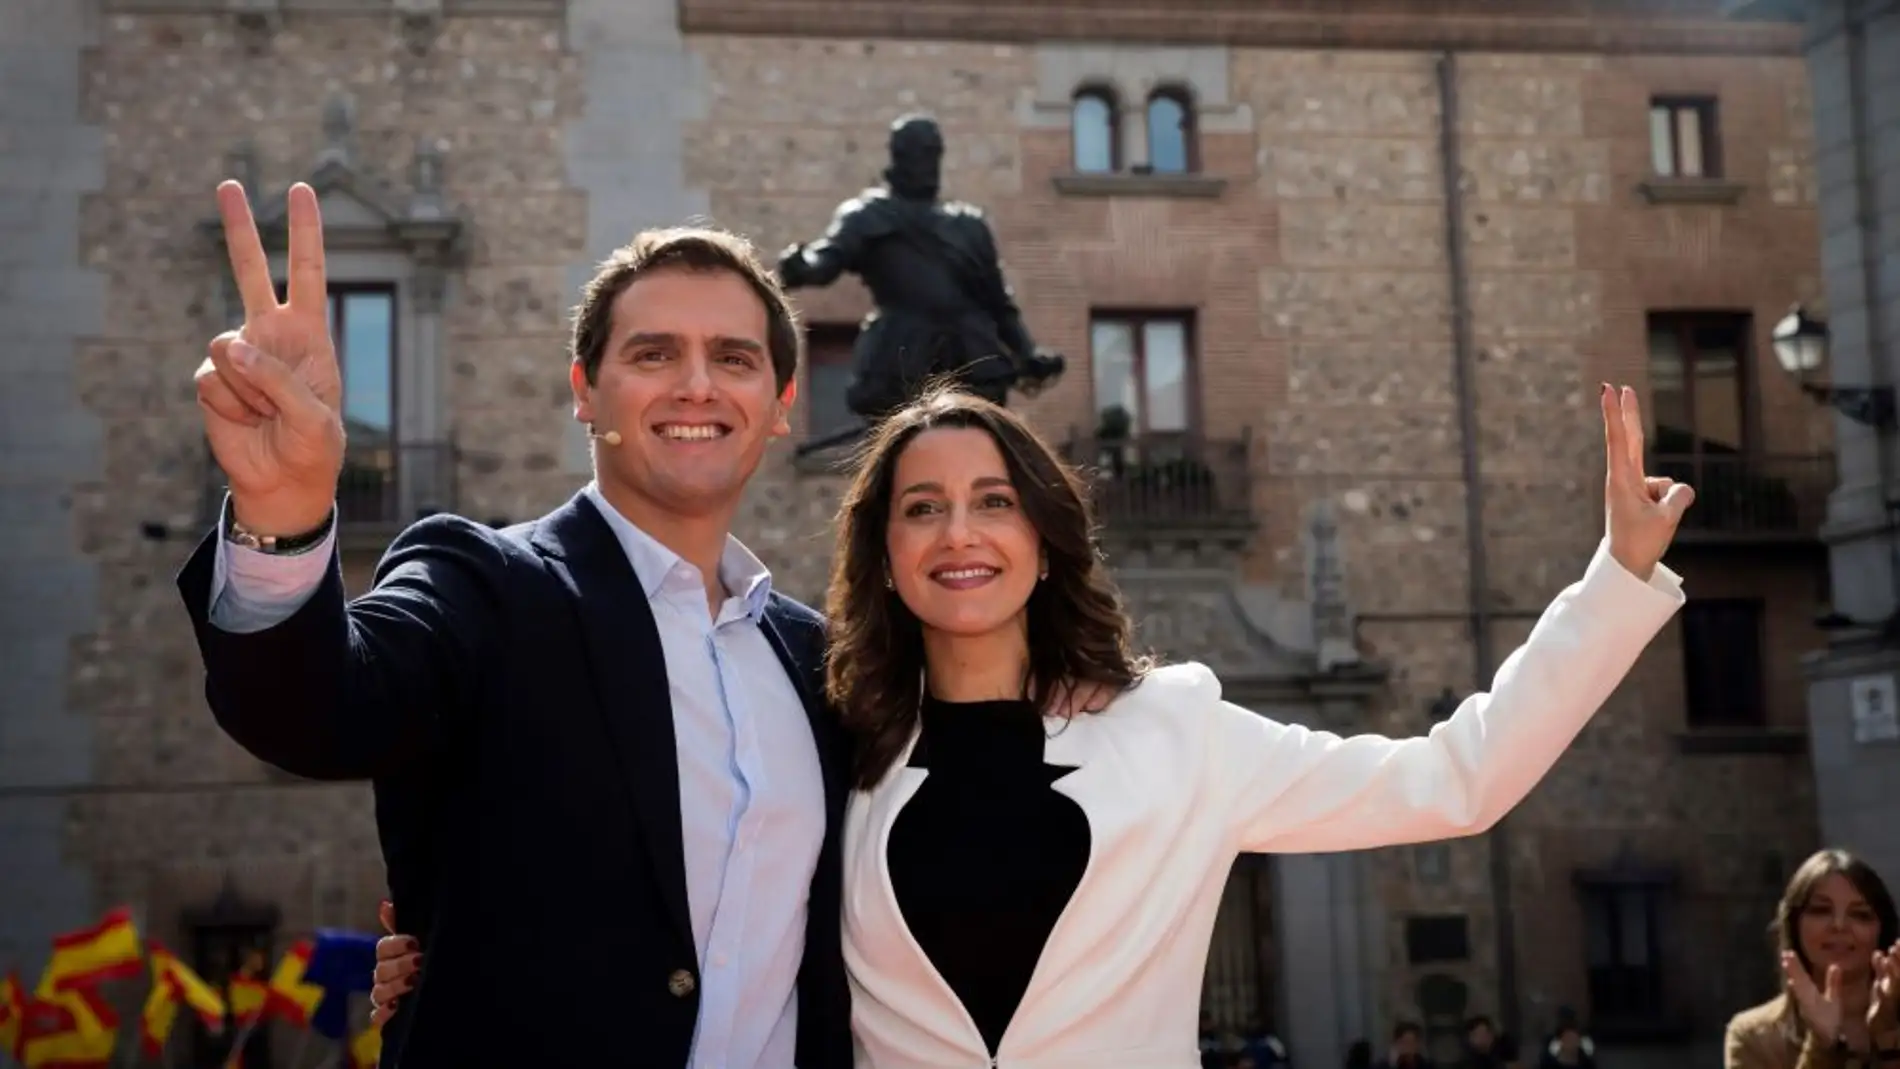 Noticias fin de semana (23-02-19) Inés Arrimadas anuncia su candidatura a las primarias de Ciudadanos por Barcelona para las generales del 28A